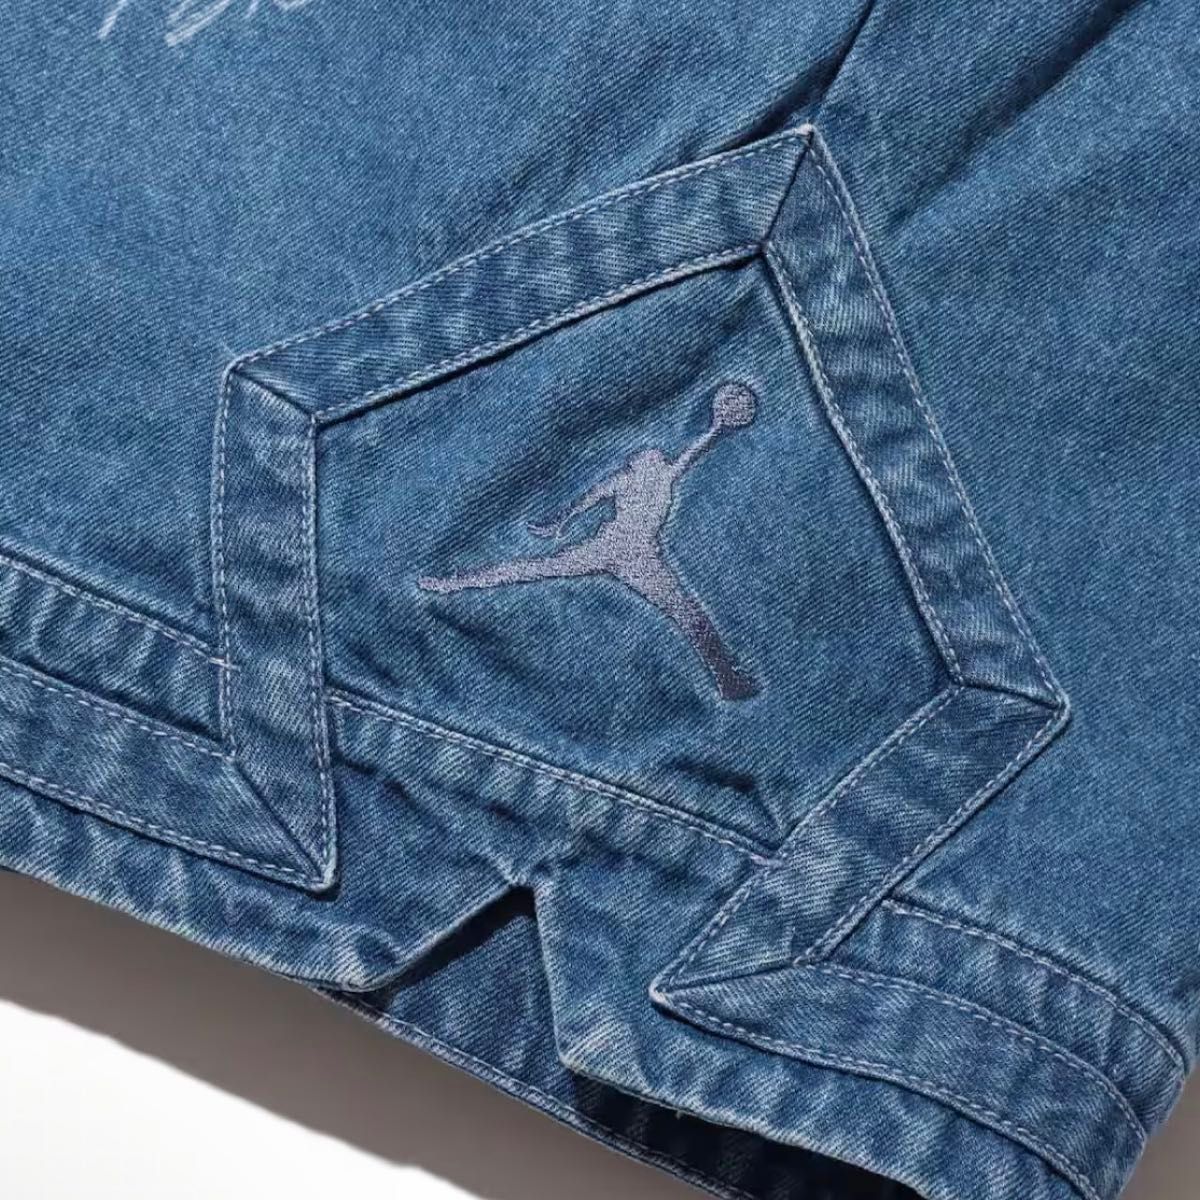 【新品XL】Nike Jordan Allover Print Men's Short Pants "Denim" デニム